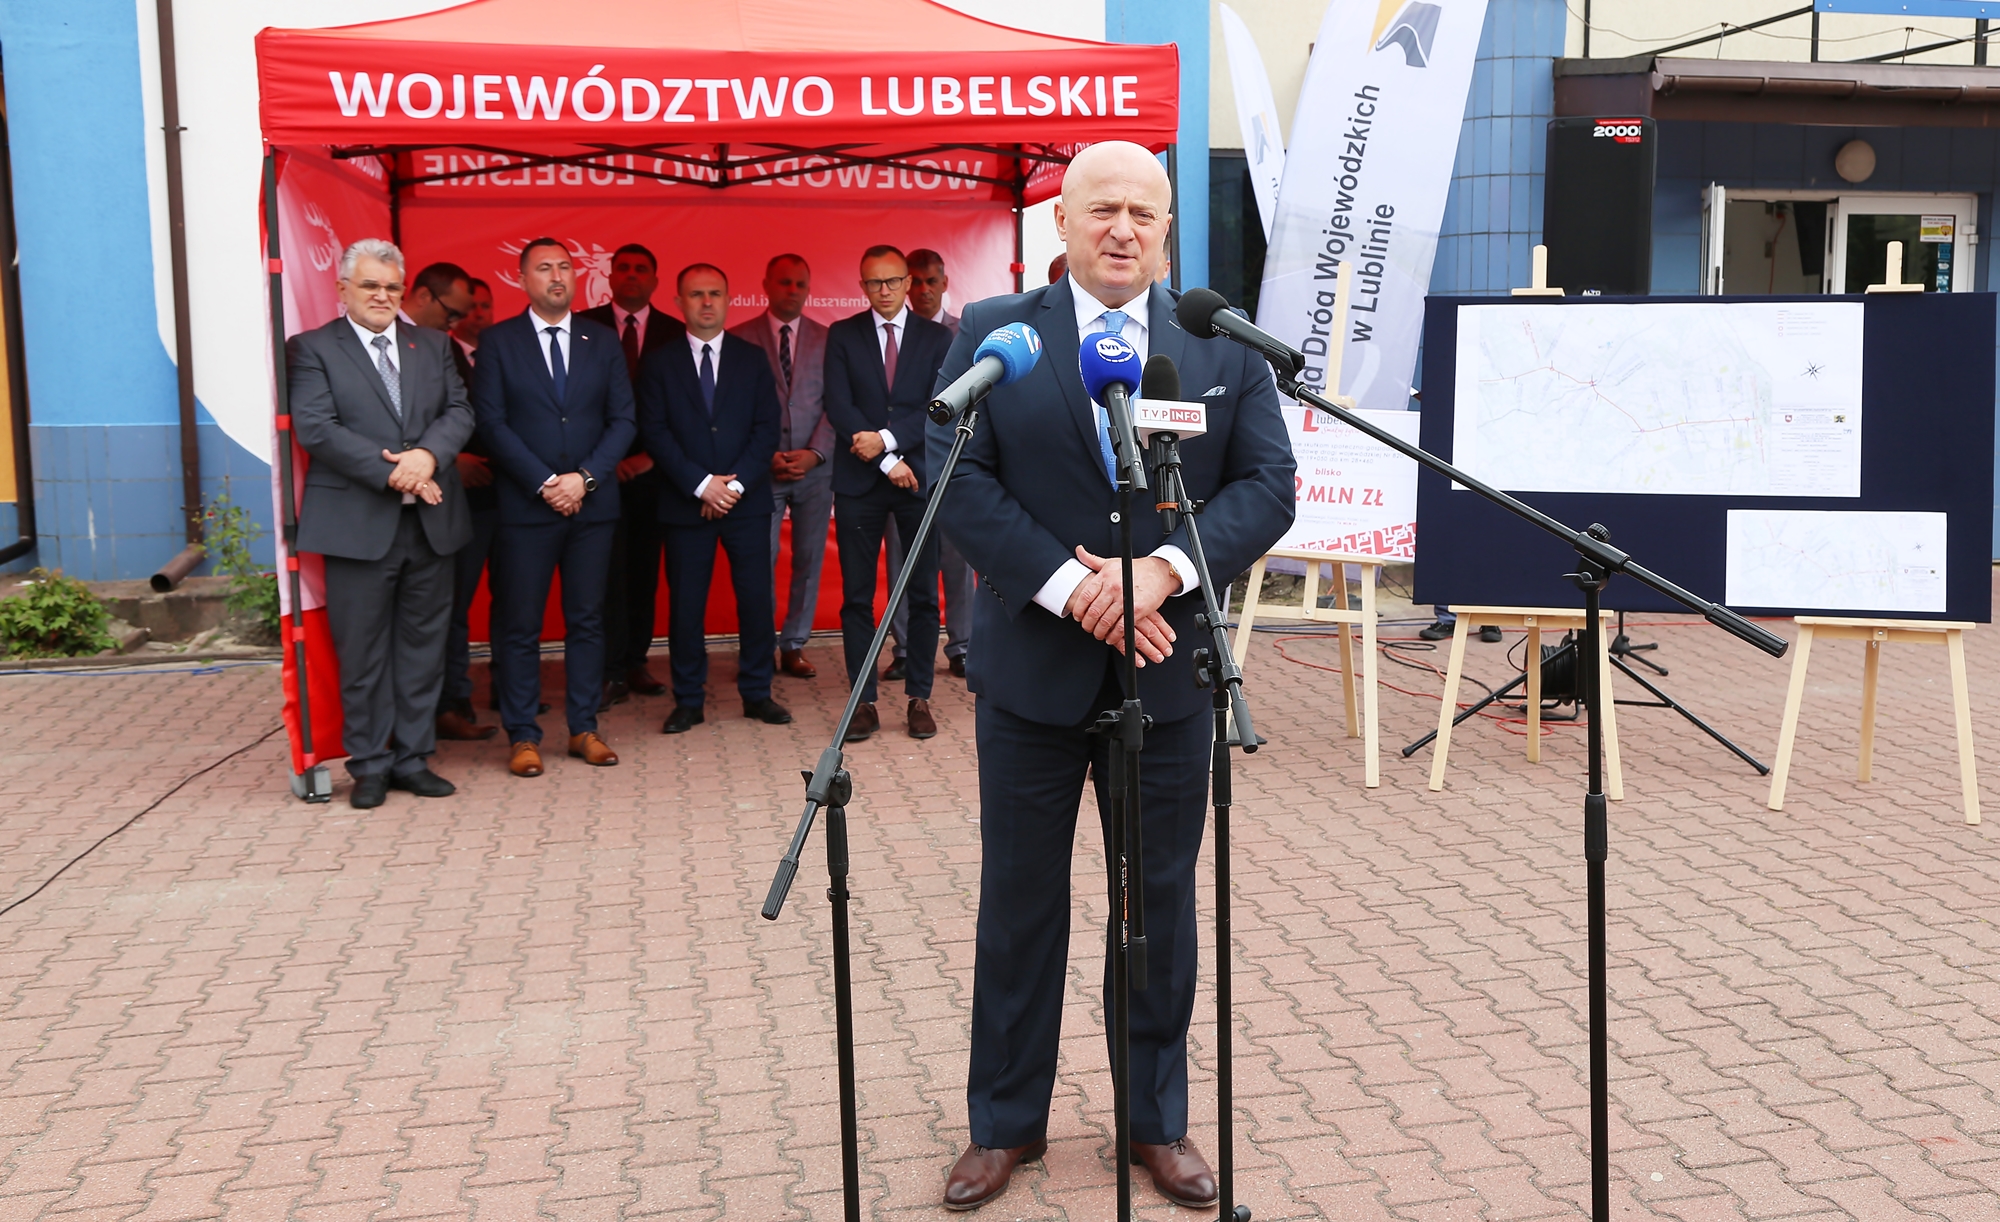 na zdjęciu widzimy marszałka województwa lubelskiego Jarosława Stawiarskiego przemawiającego podczas podpisania umowy na przebudowę drogi wojewódzkiej numer 820